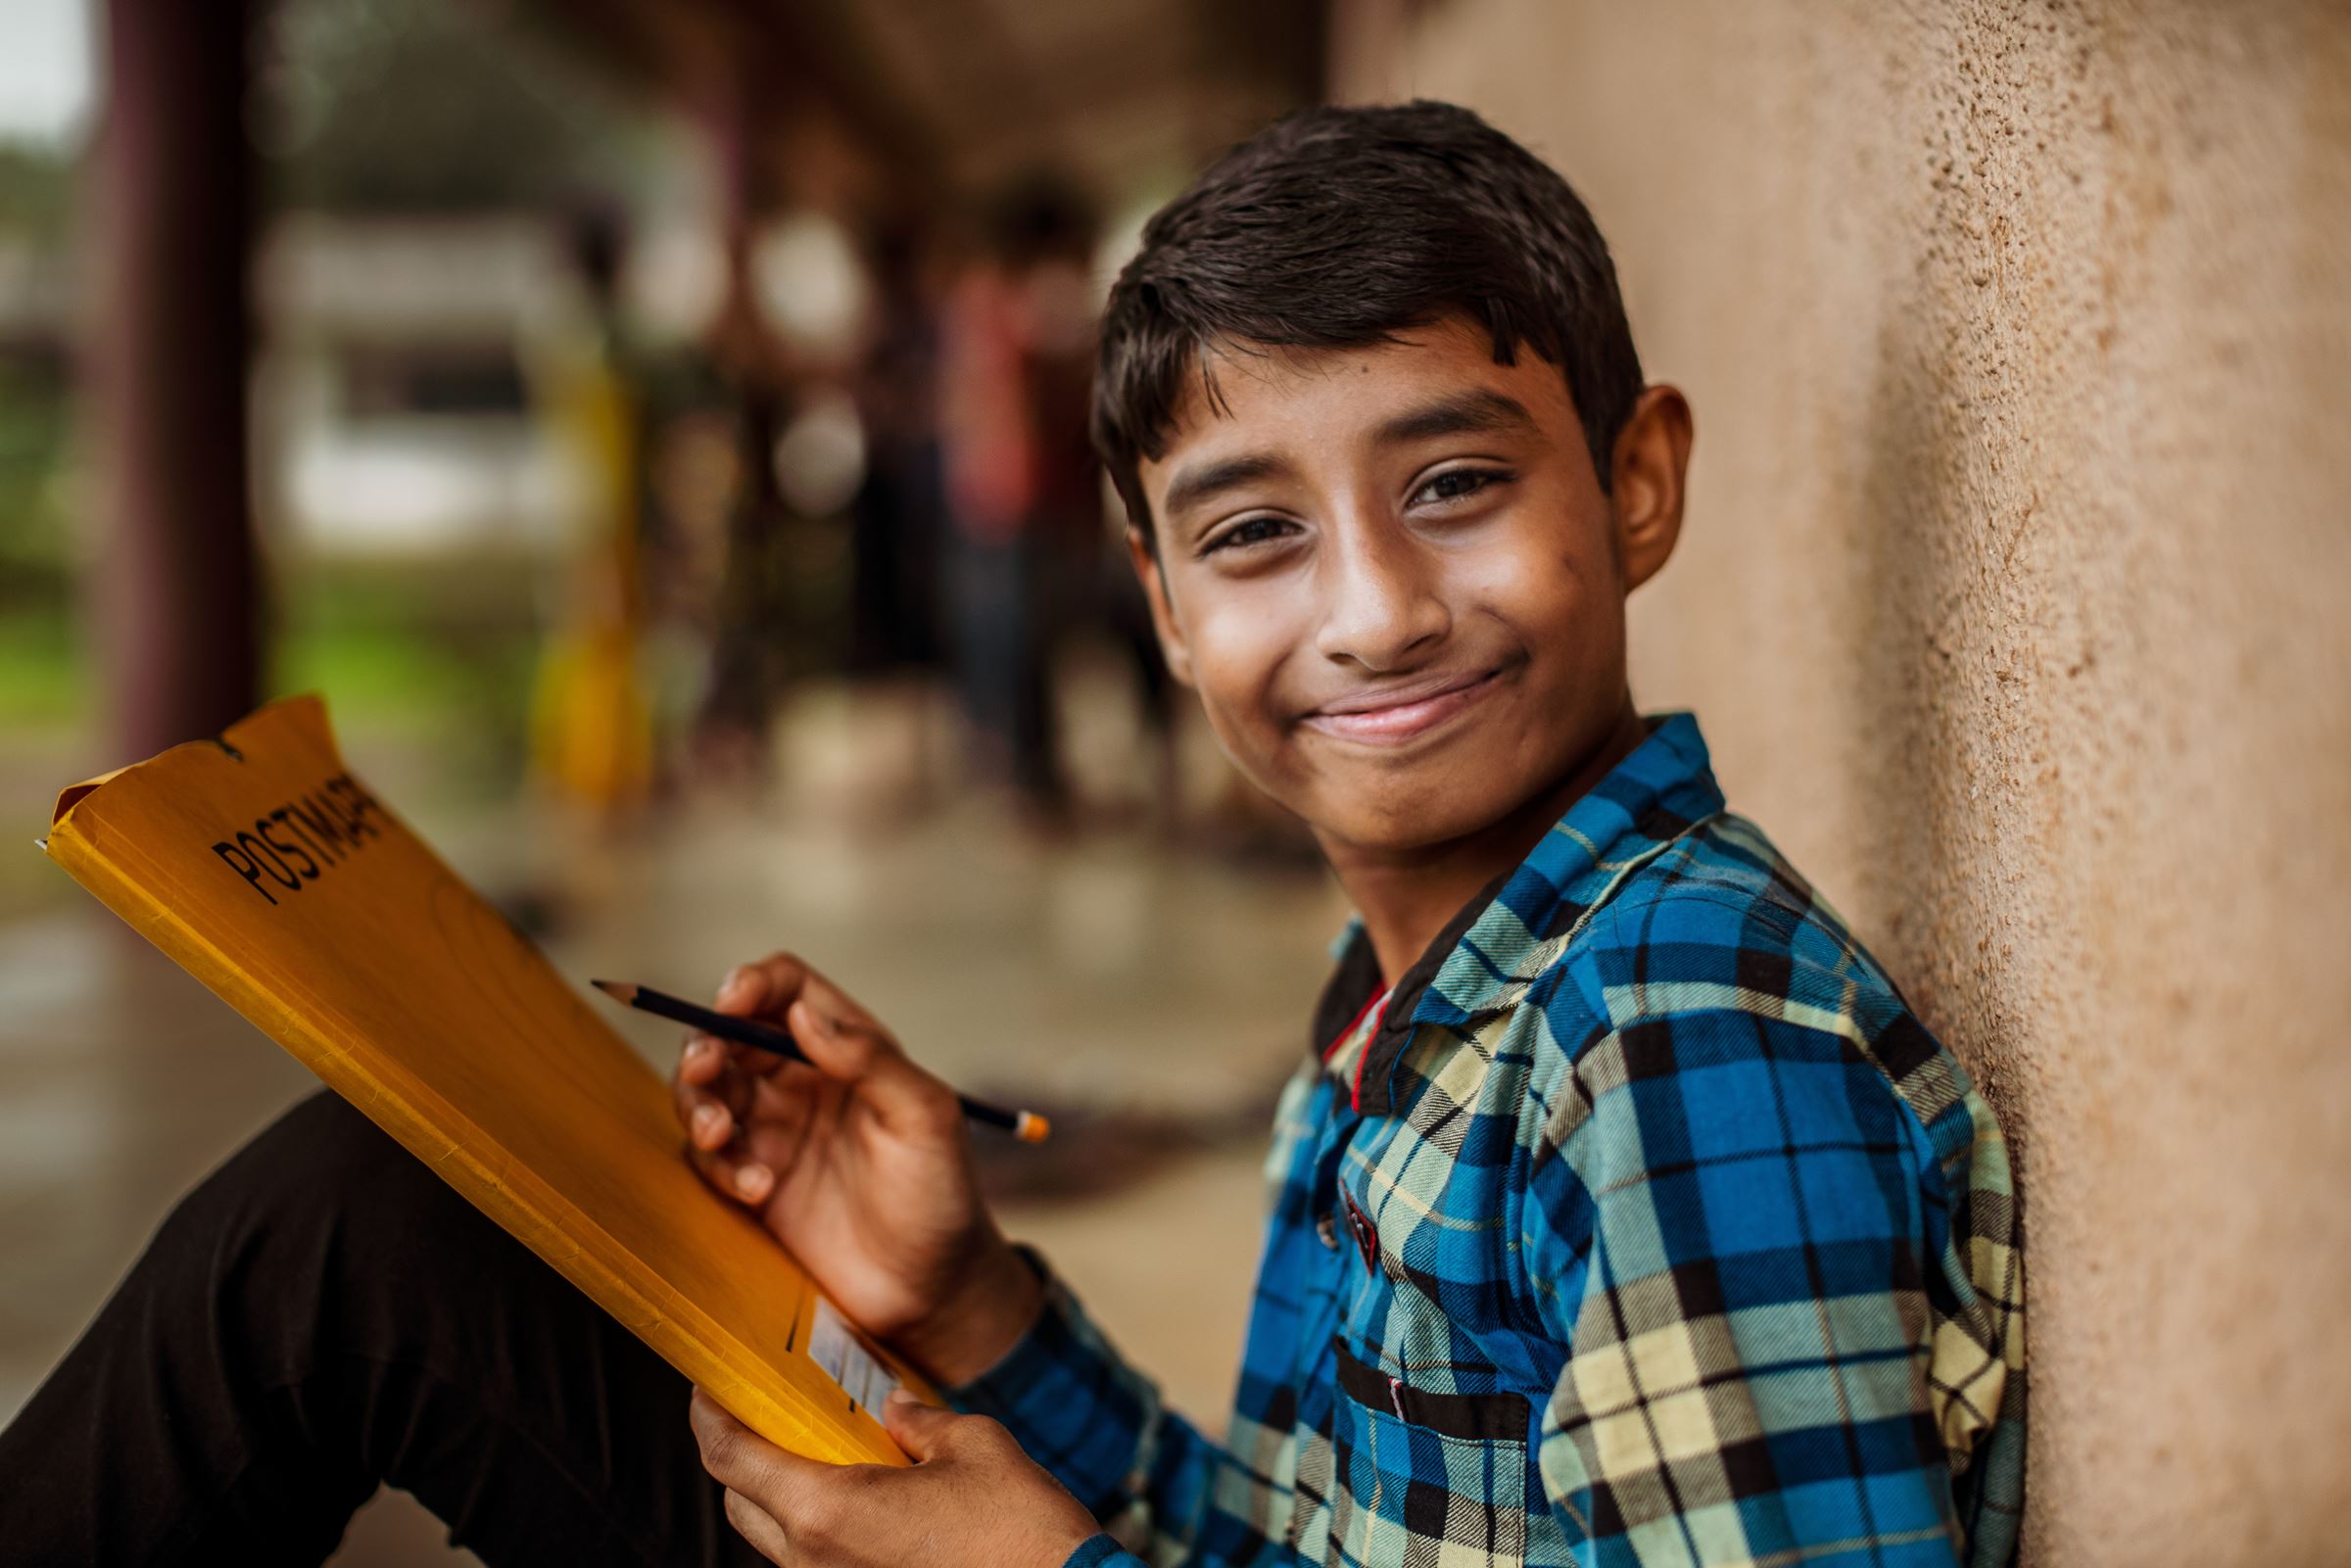 ein Junge mit einem Heft und einem Bleistift in der Hand lehnt an einer Hauswand und lächelt breit. (Bildquelle: Jakob Studnar)